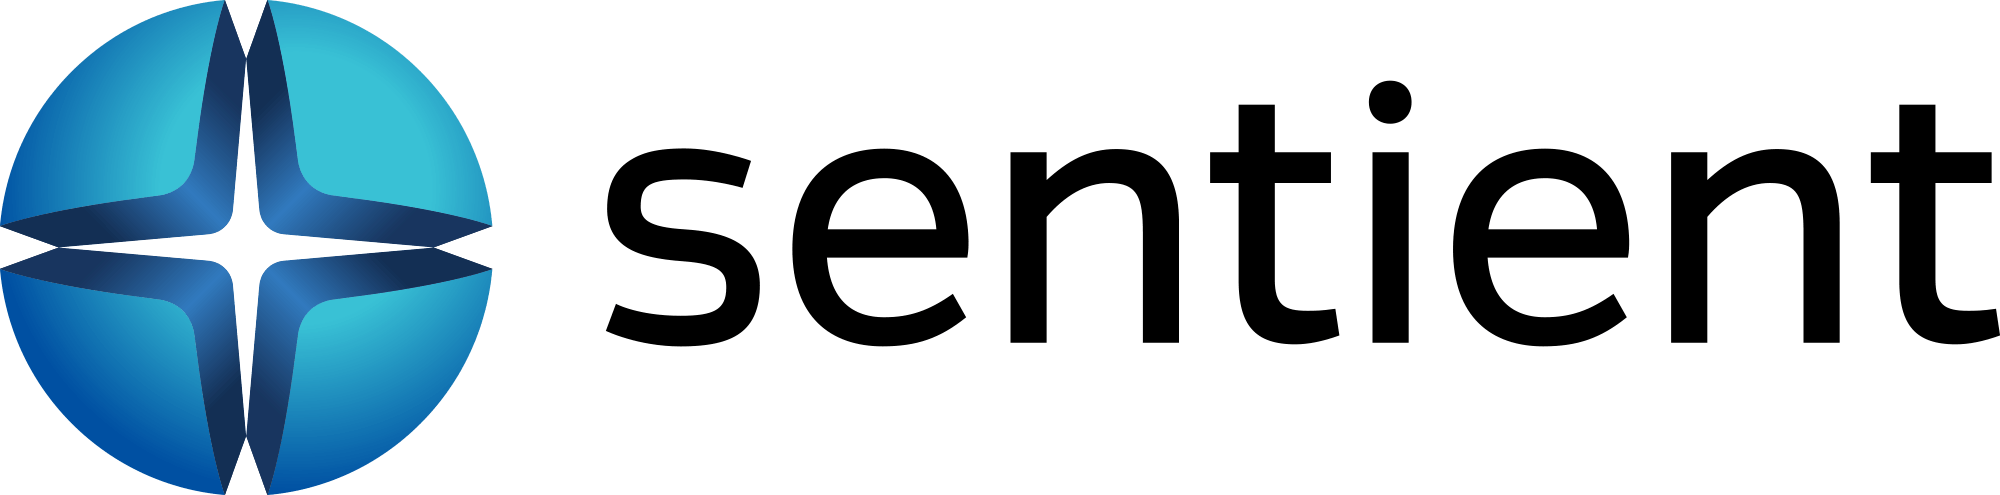 Evolv adquirió Sentient Ascend™, una plataforma de optimización de conversión de fama mundial en marzo de 2019